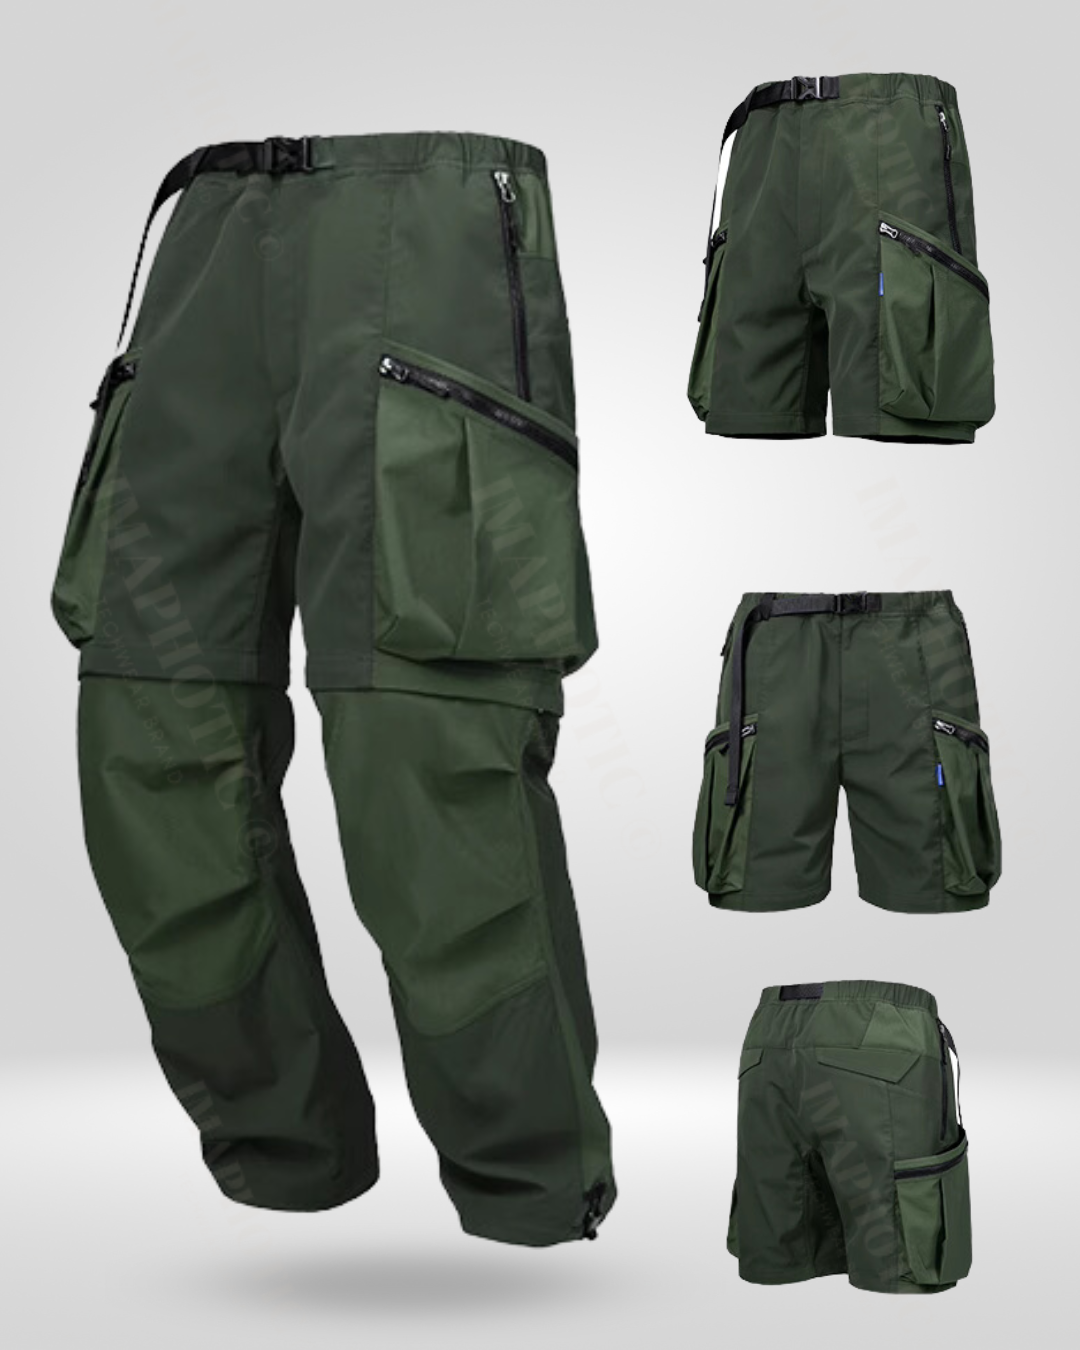 ArmyGreen Convertible Pants, Zip-off Outdoor Pants